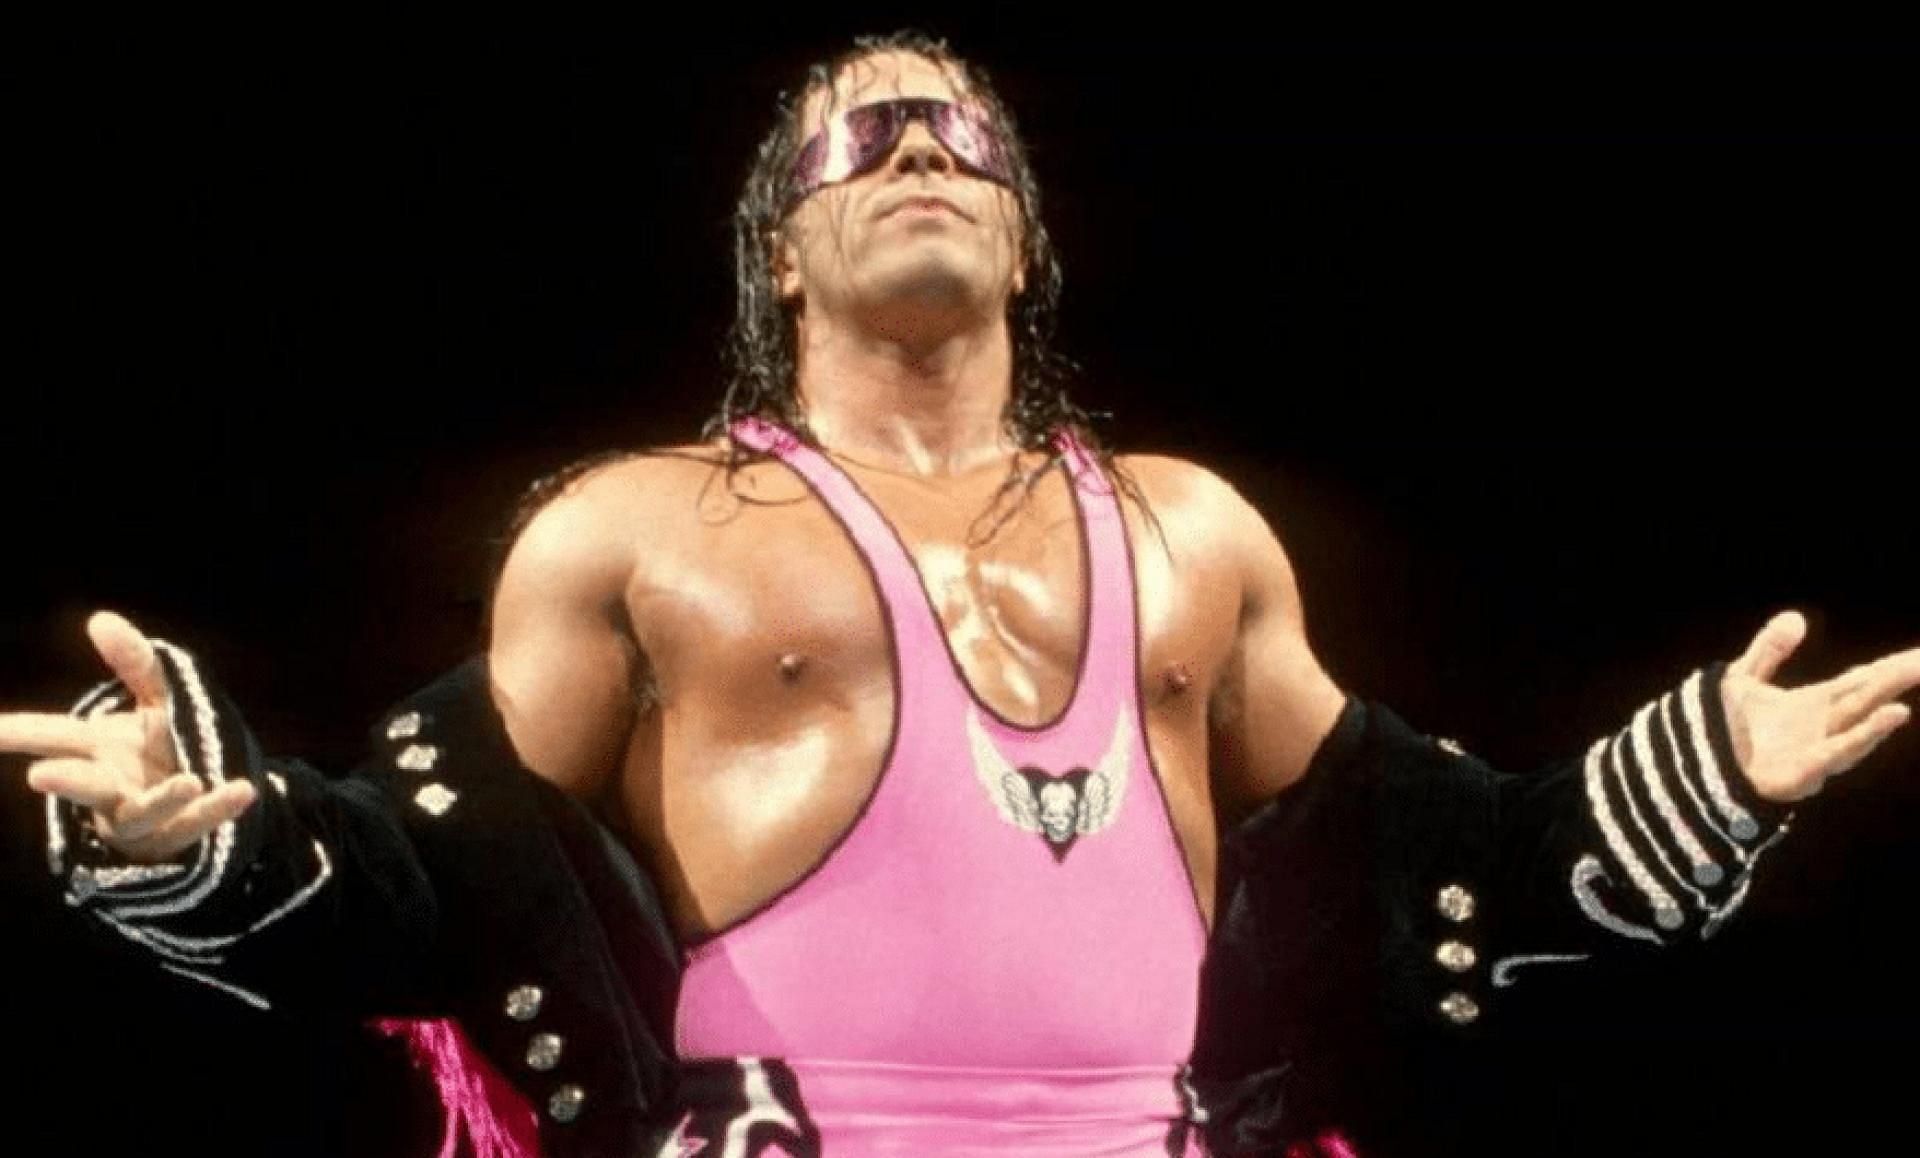 Bret Hart had an iconic run in WWE